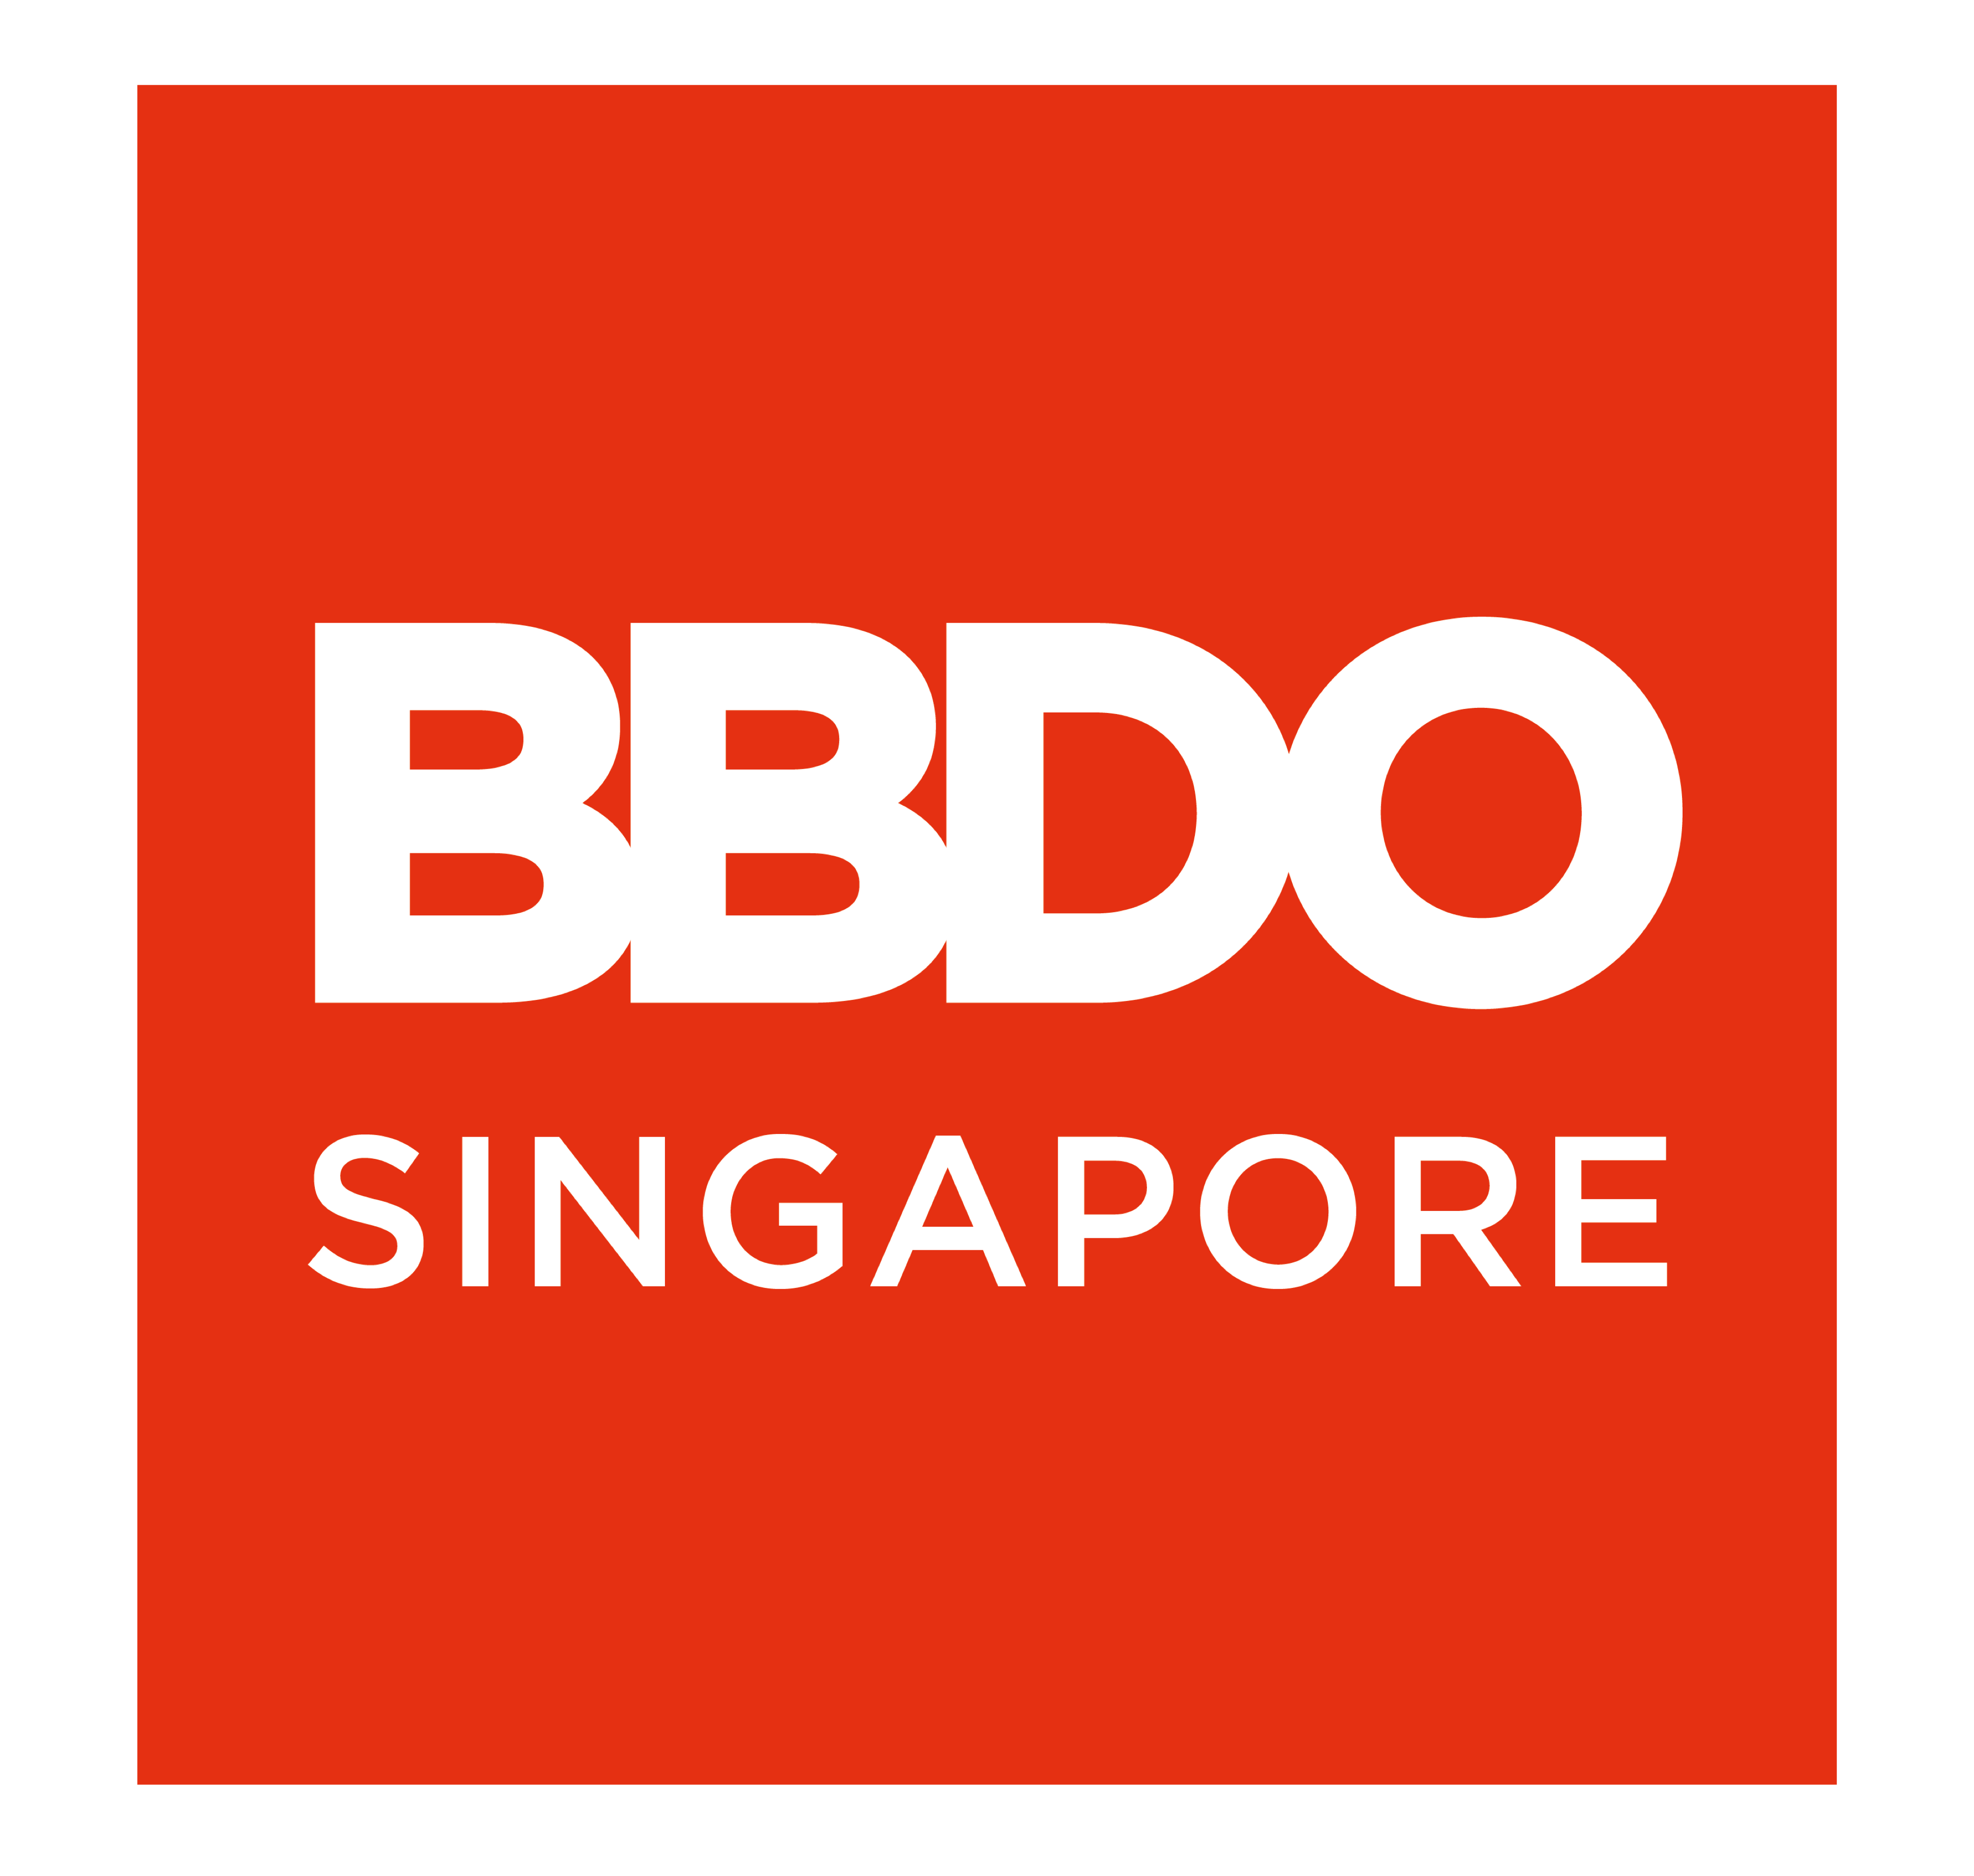 BBDO Singapore